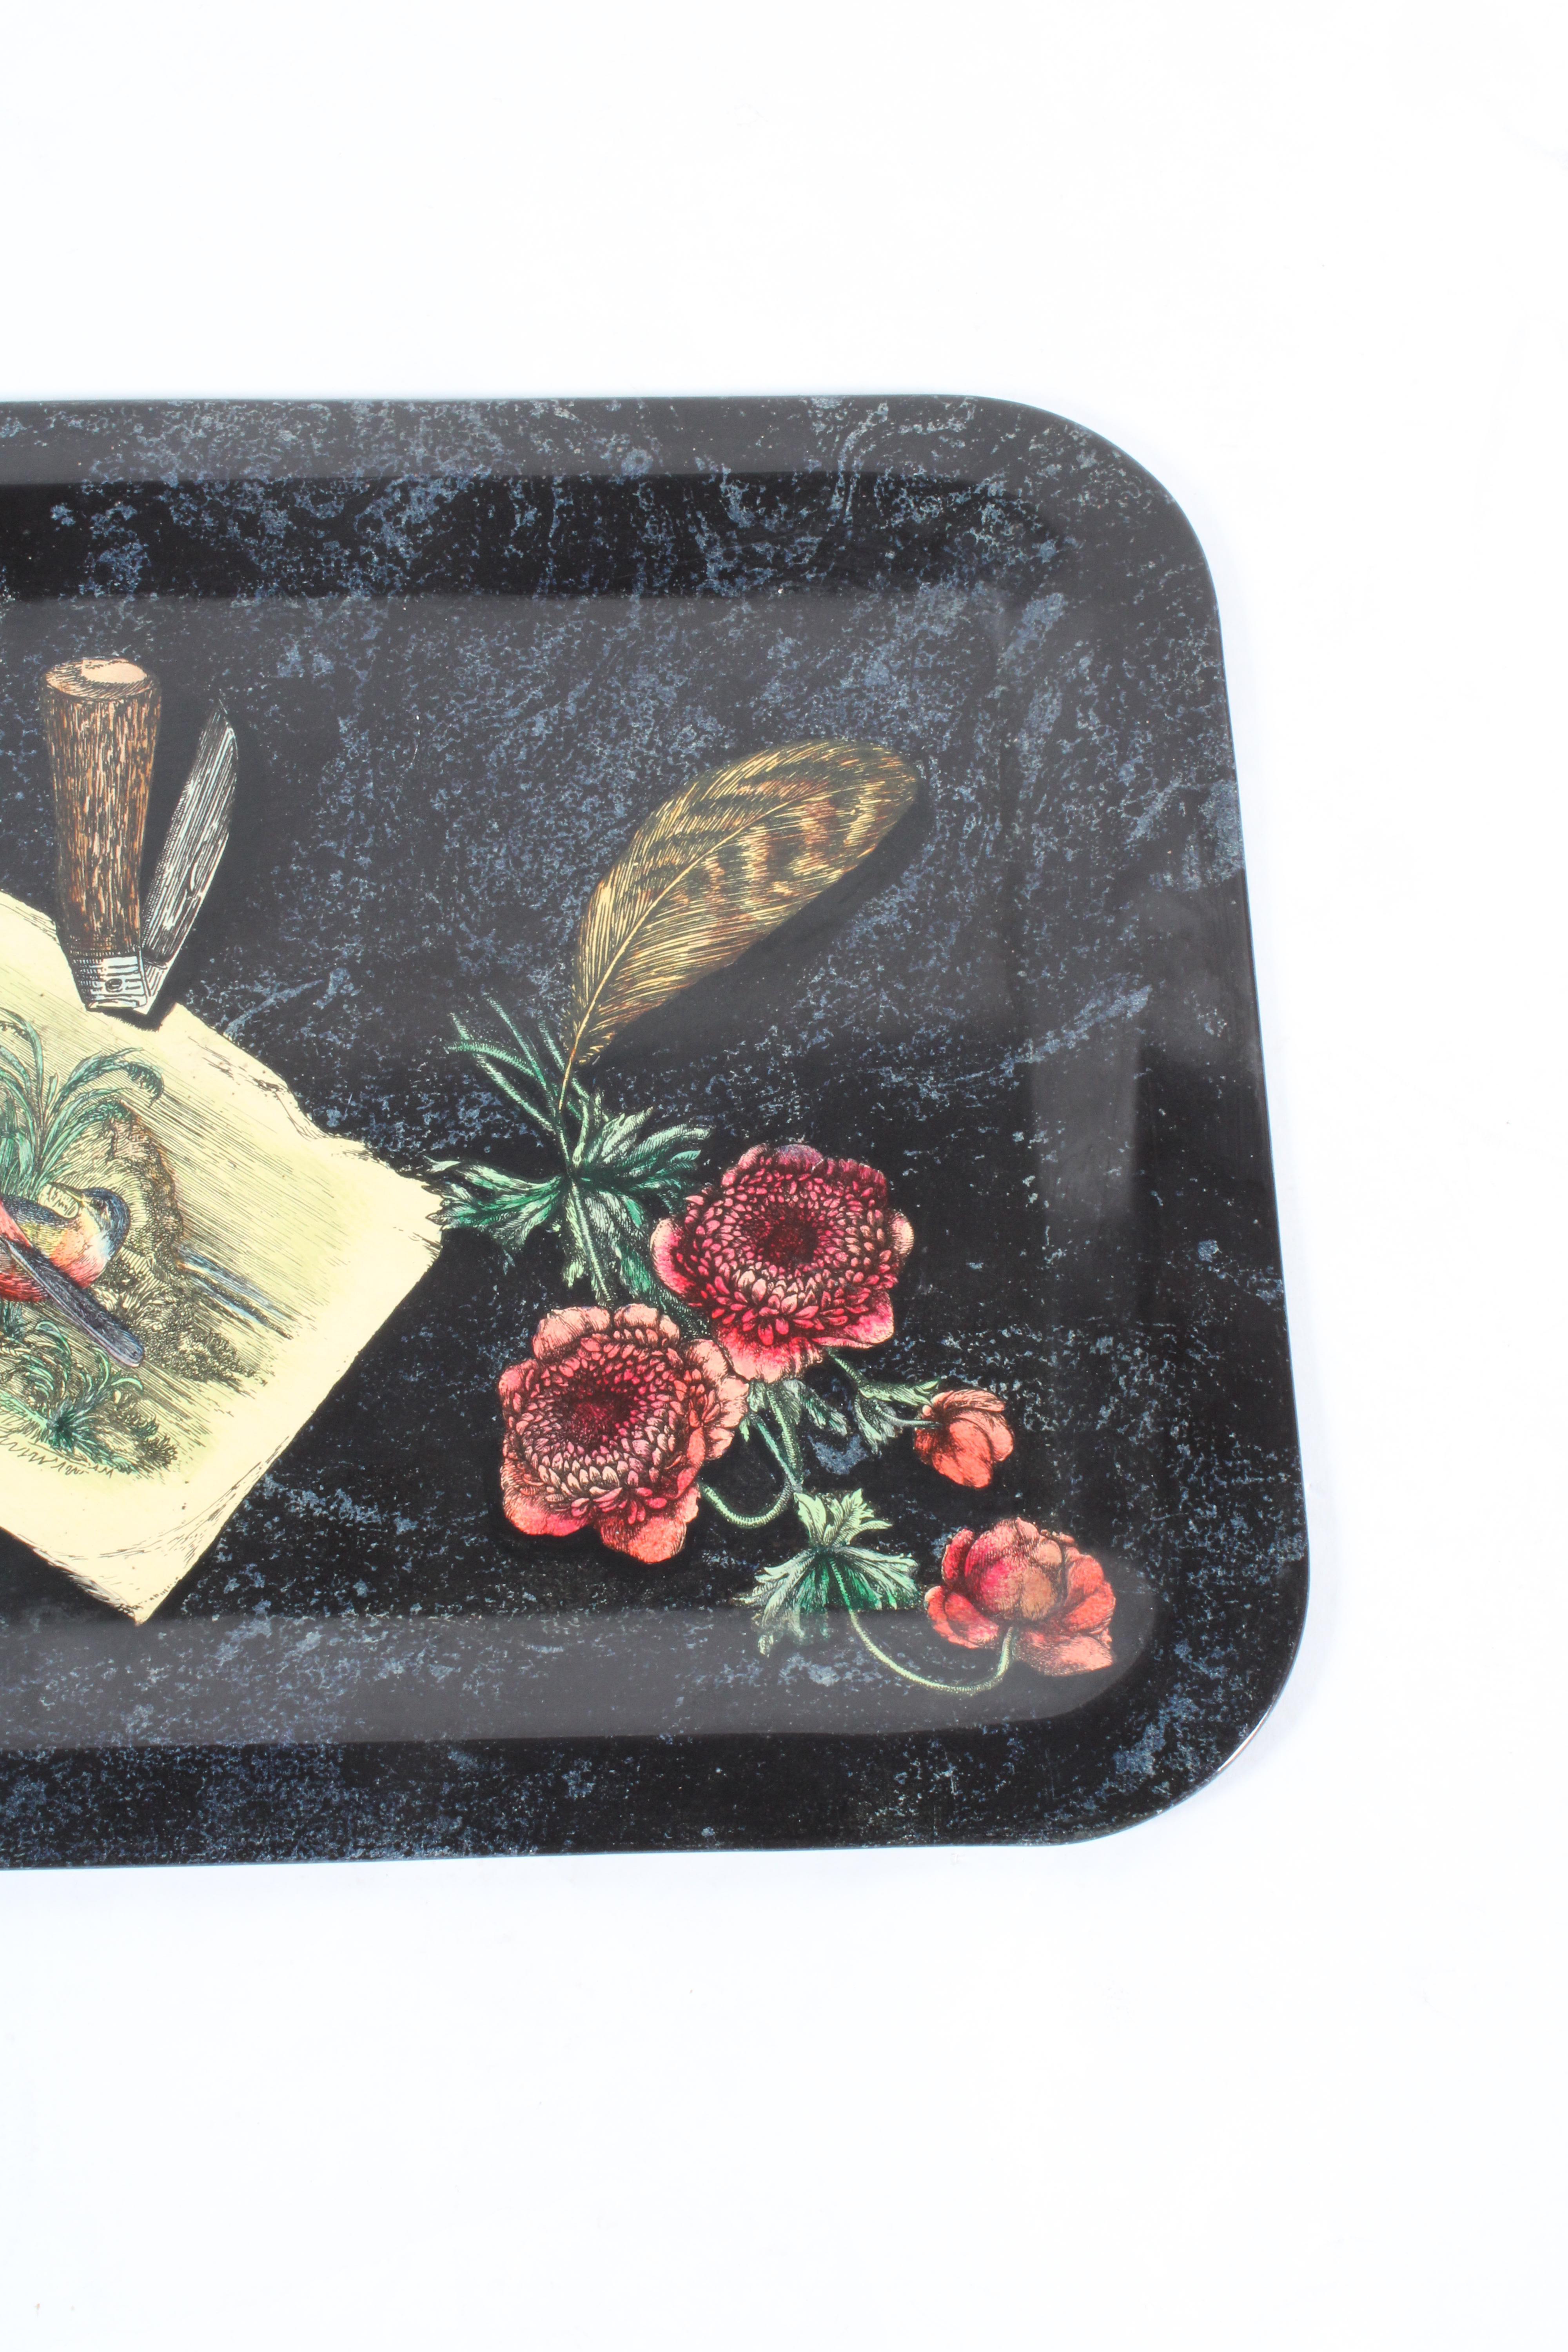 Exquisites originales Fornasetti Tablett um 1950 mit einem Label des Herstellers am Boden. Litografischer Transferdruck auf Aluminium, der einen schönen Vogel und ein Blumenarrangement zeigt. Ein Muss für jeden Sammler von Fornasetti und